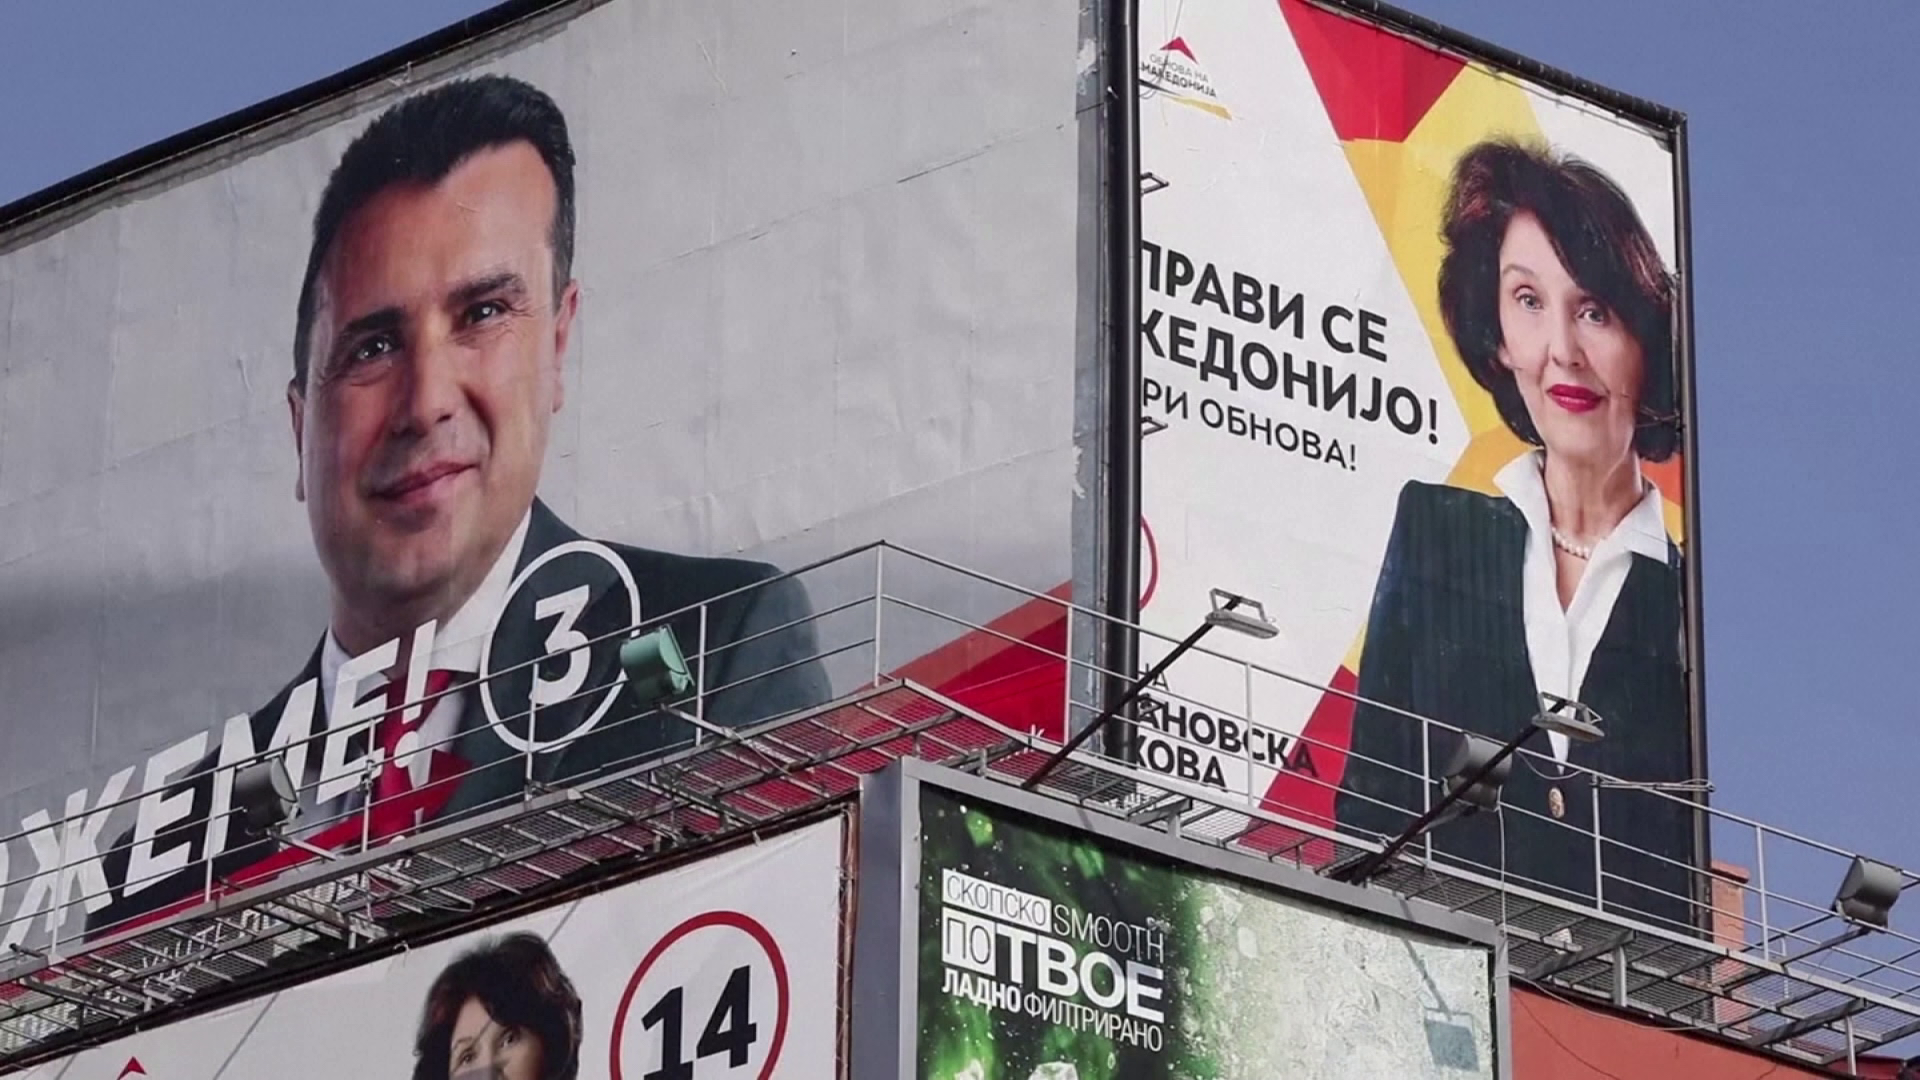 Parlamenti választást tartanak Észak-Macedóniában